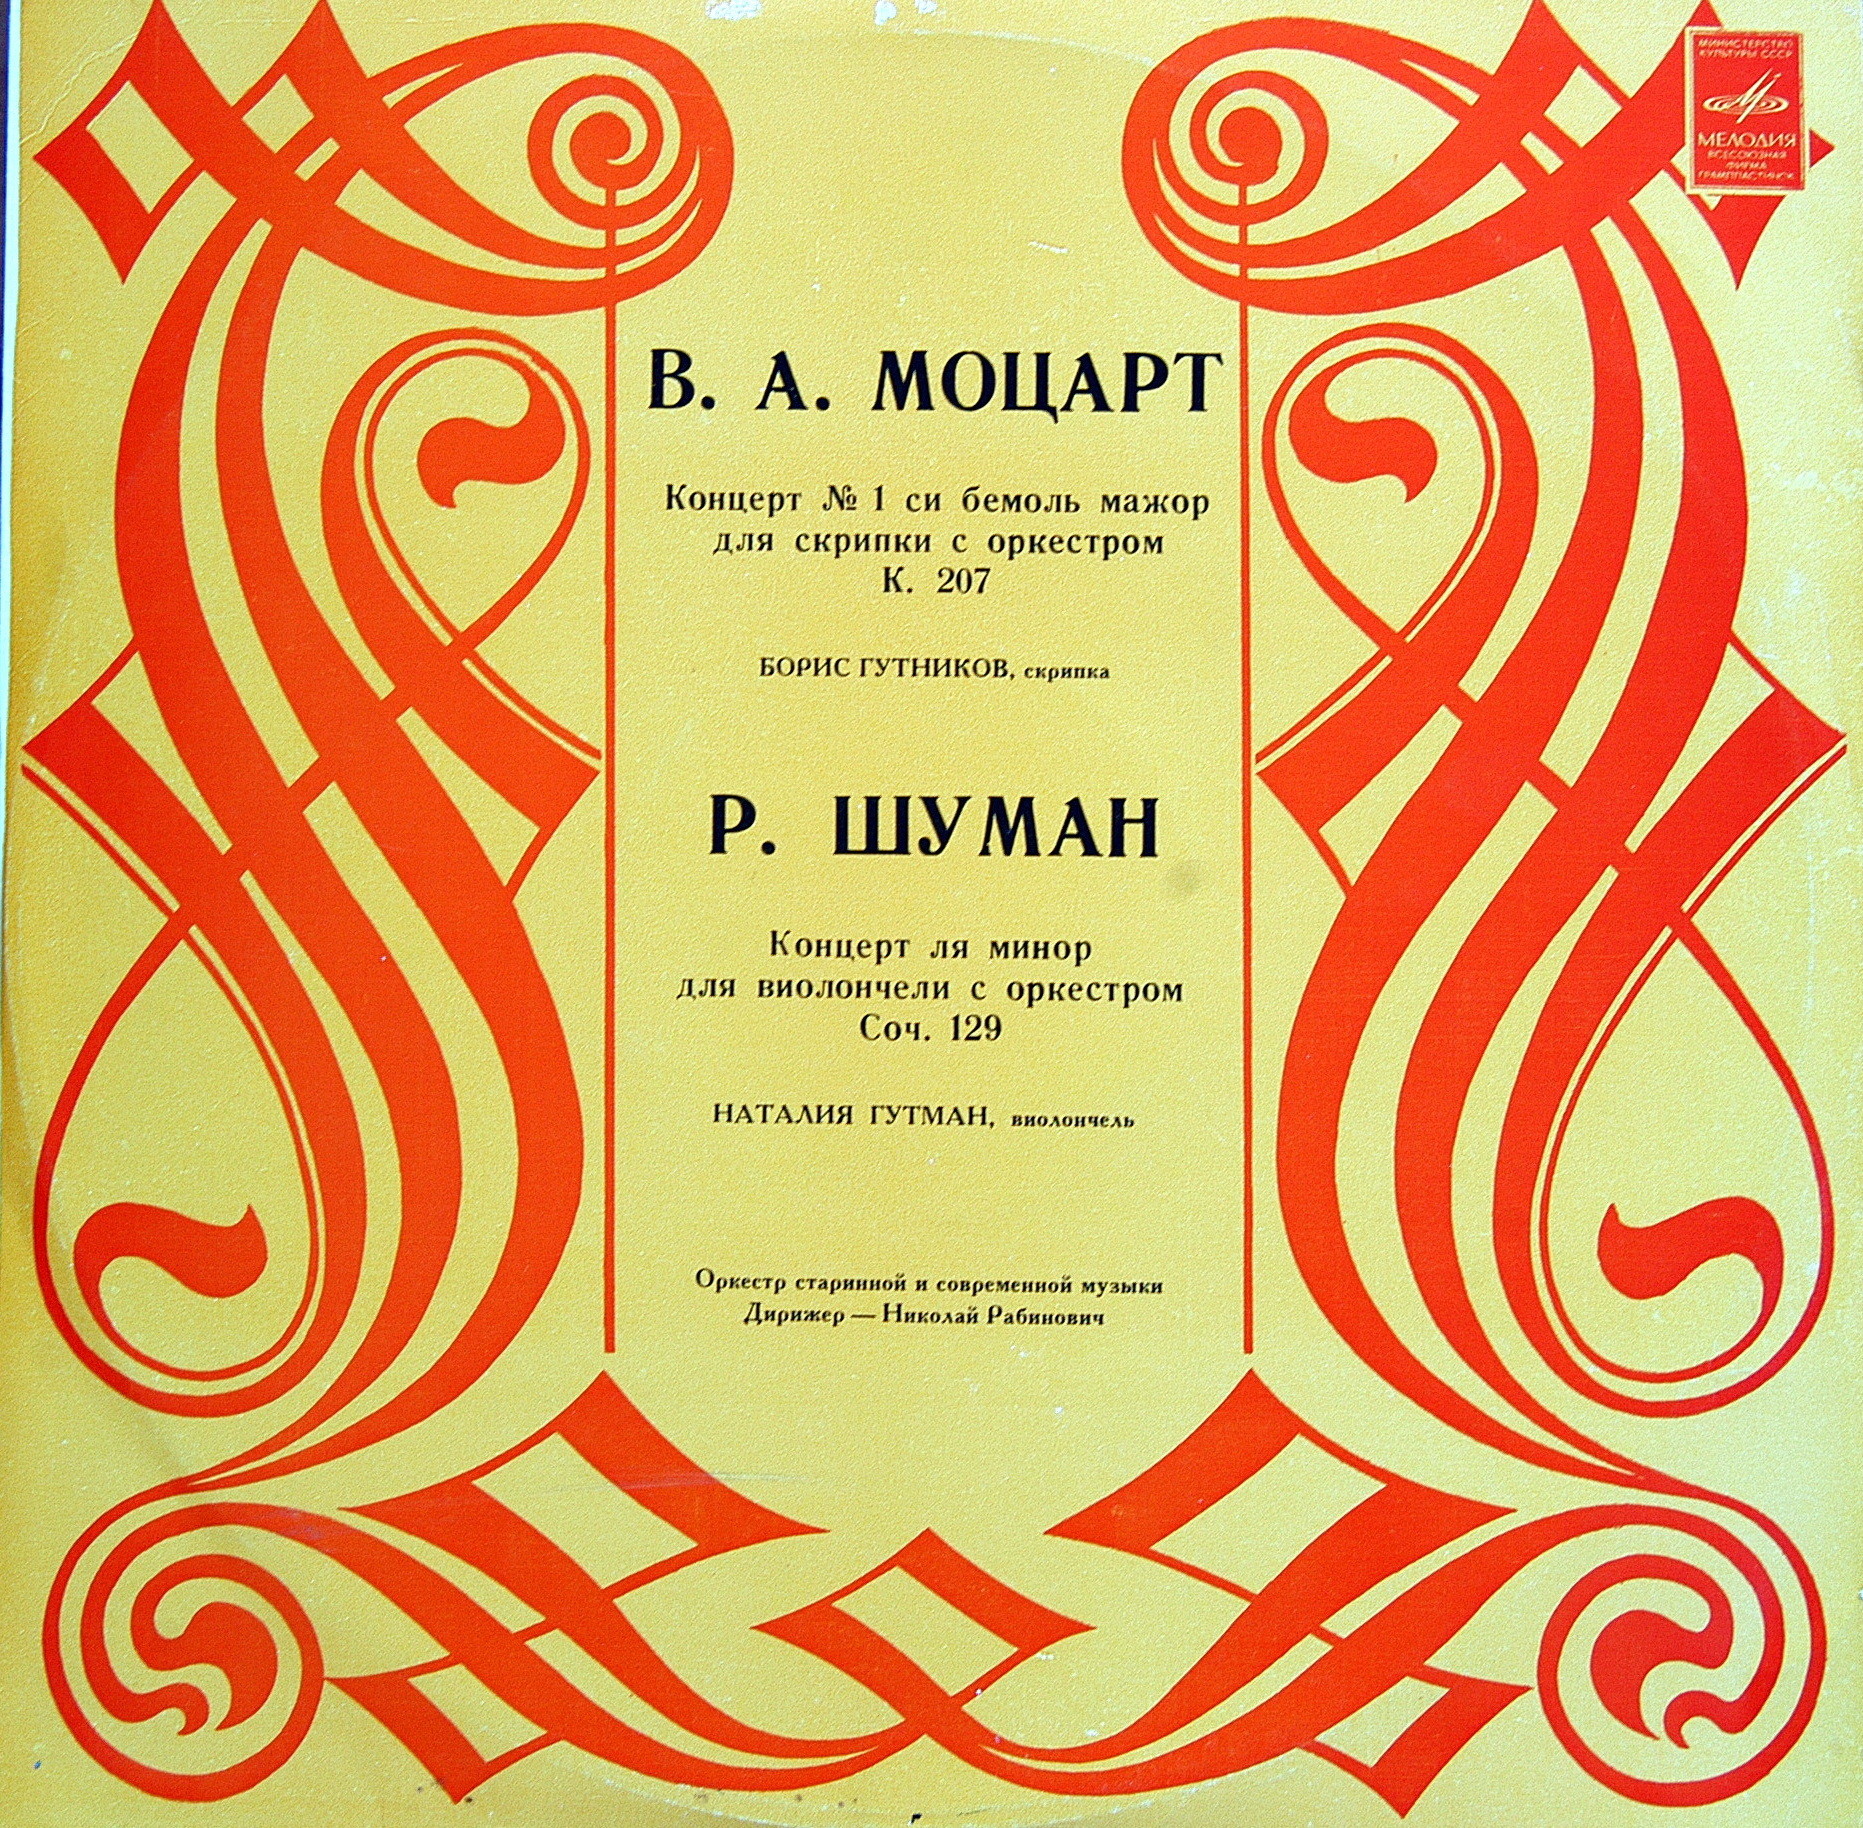 В. А. Моцарт, Р. Шуман. Концерты для скрипки и виолончели - Б. Гутников, Н. Гутман